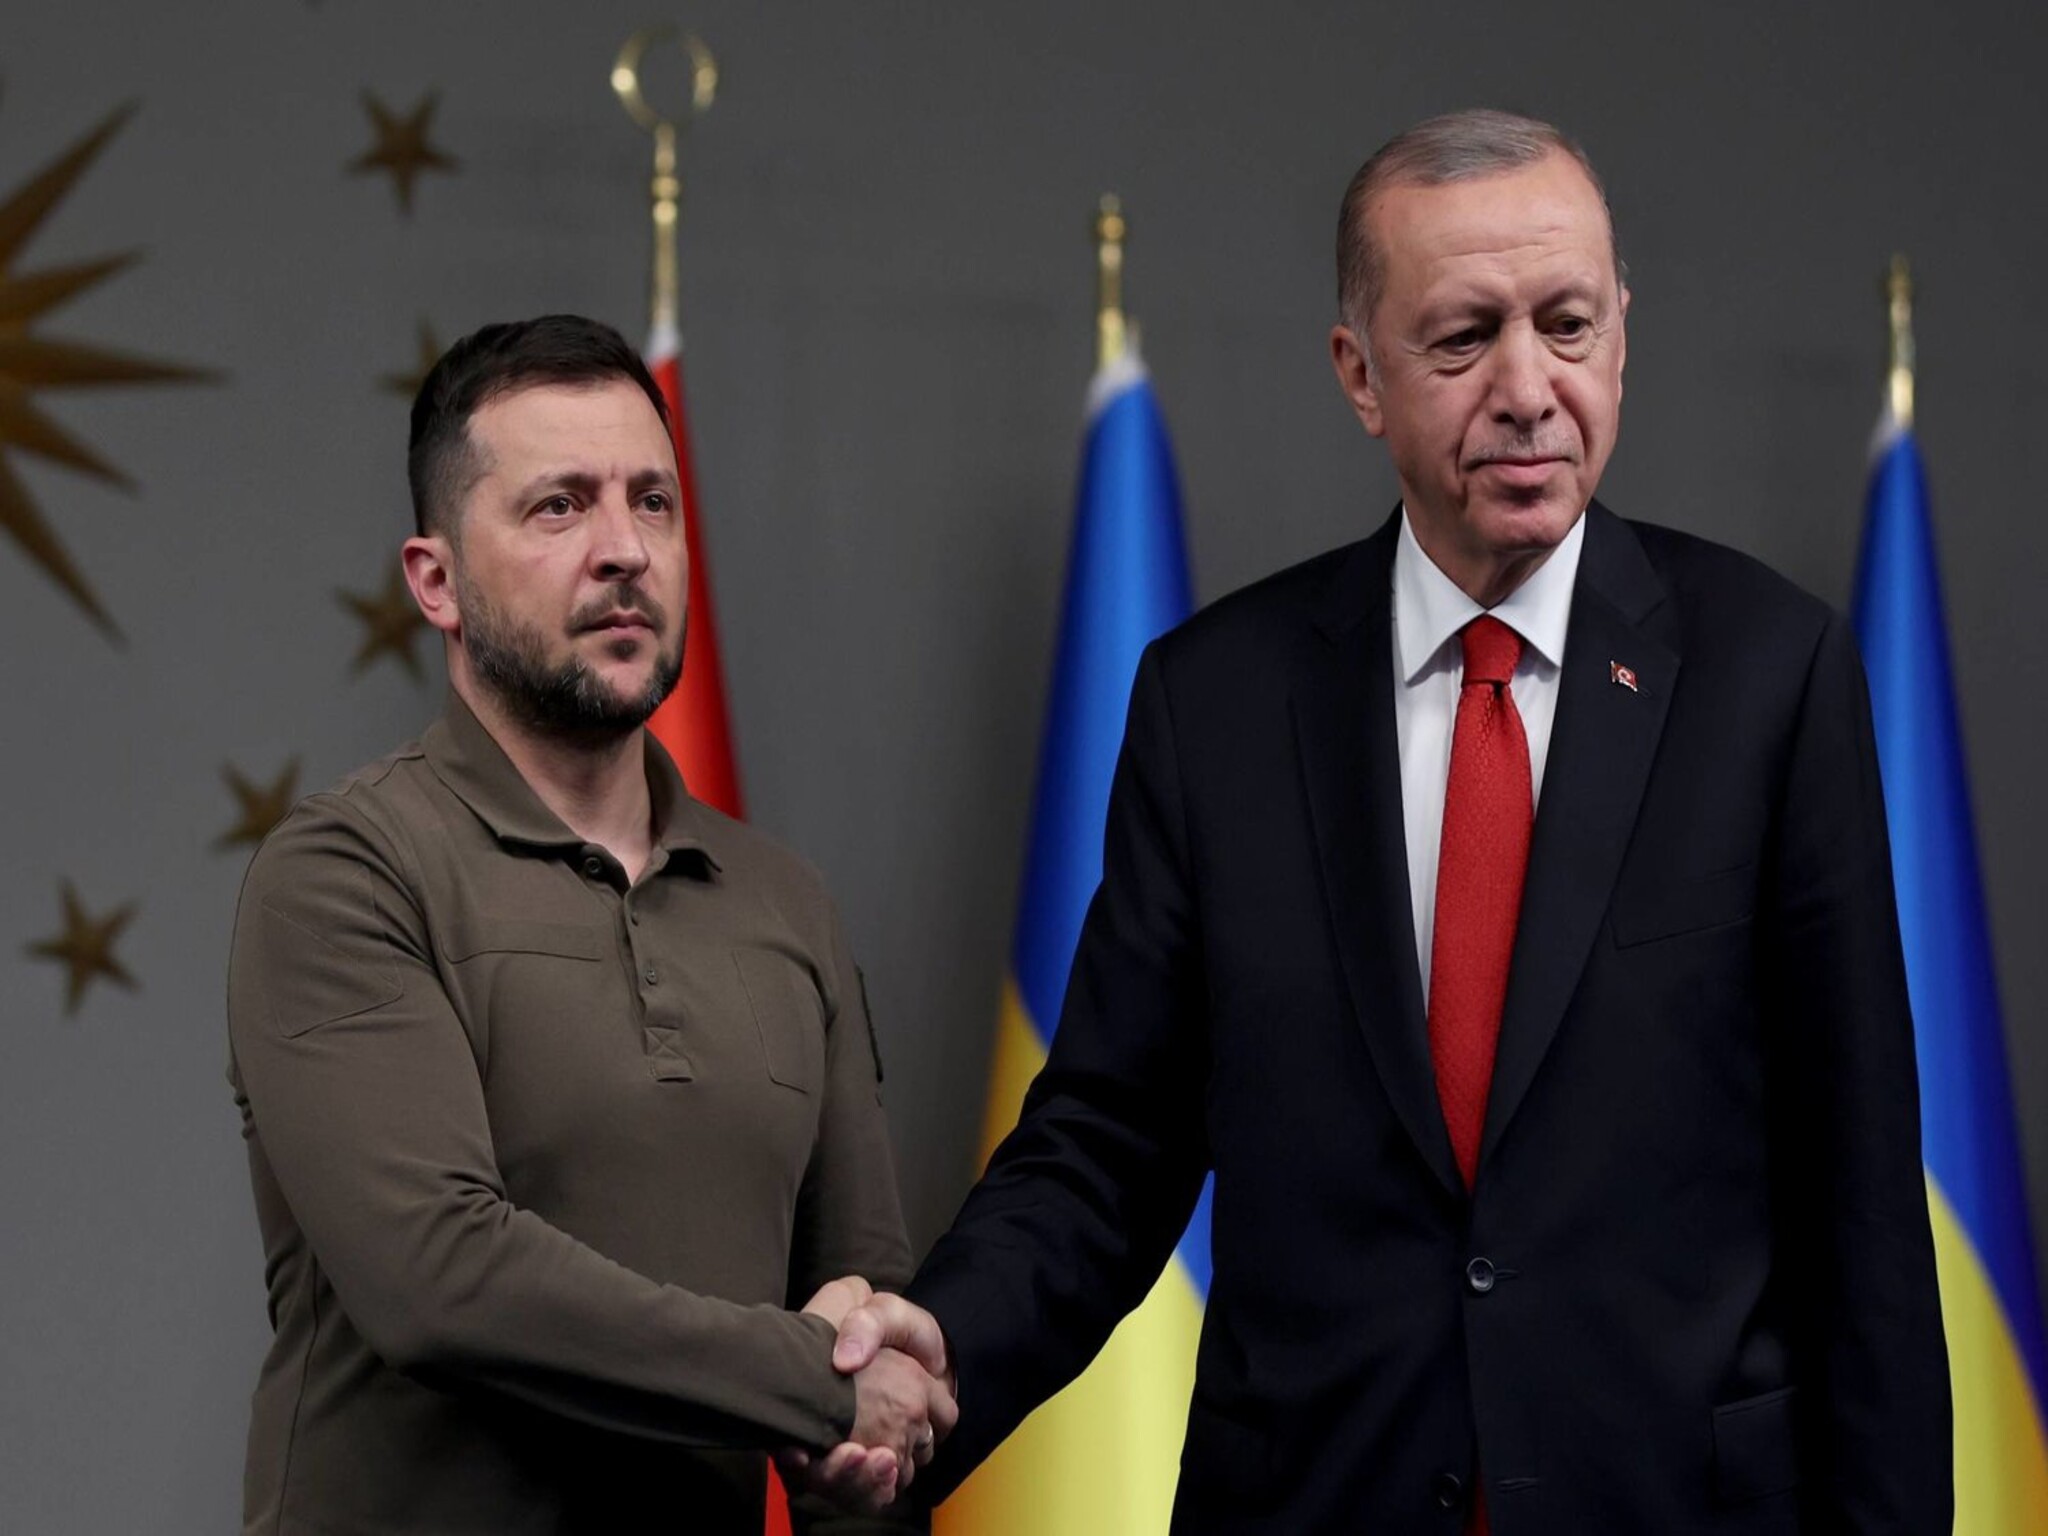 زيلينسكي يتحدث مع أردوغان بشأن محادثات السلام والوضع في الشرق الأوسط 